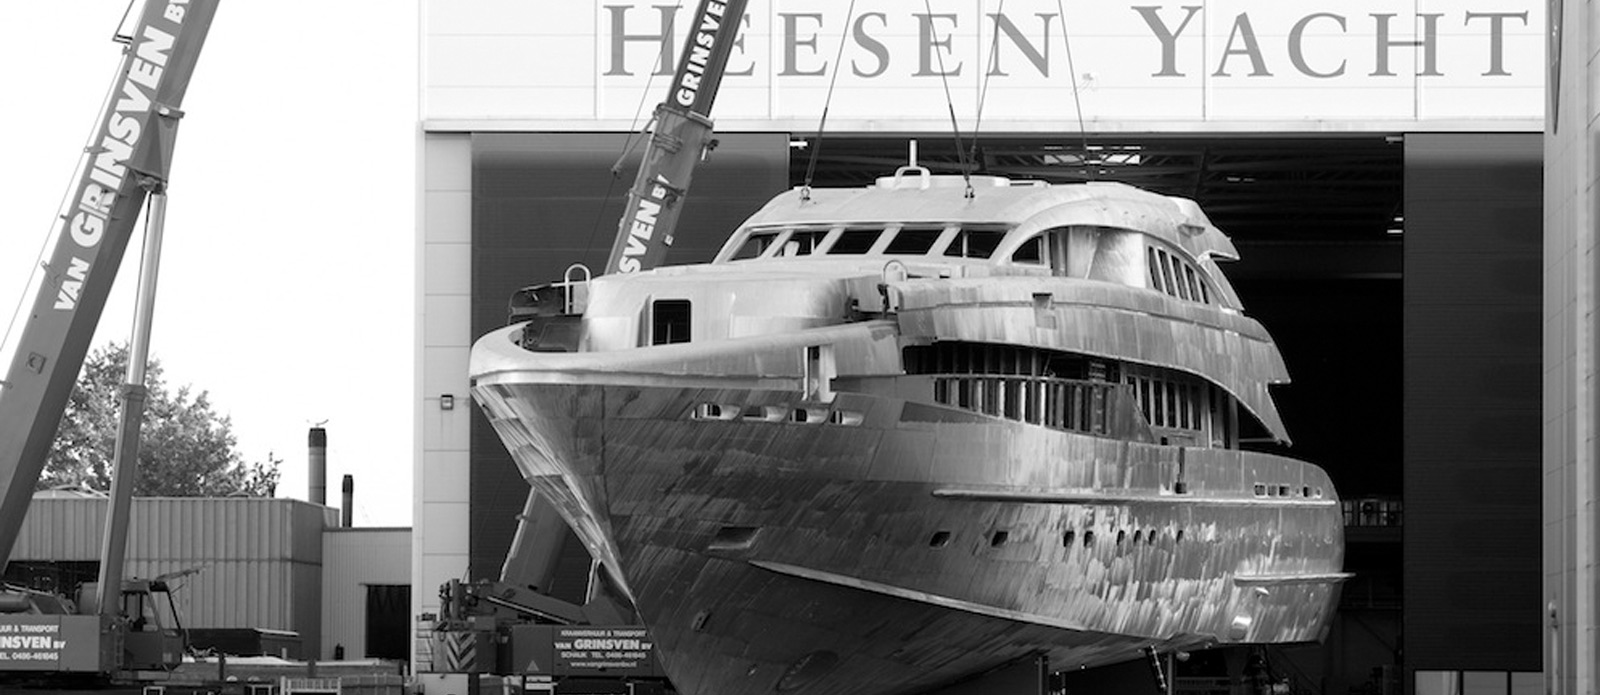 heesen yachts shipyard